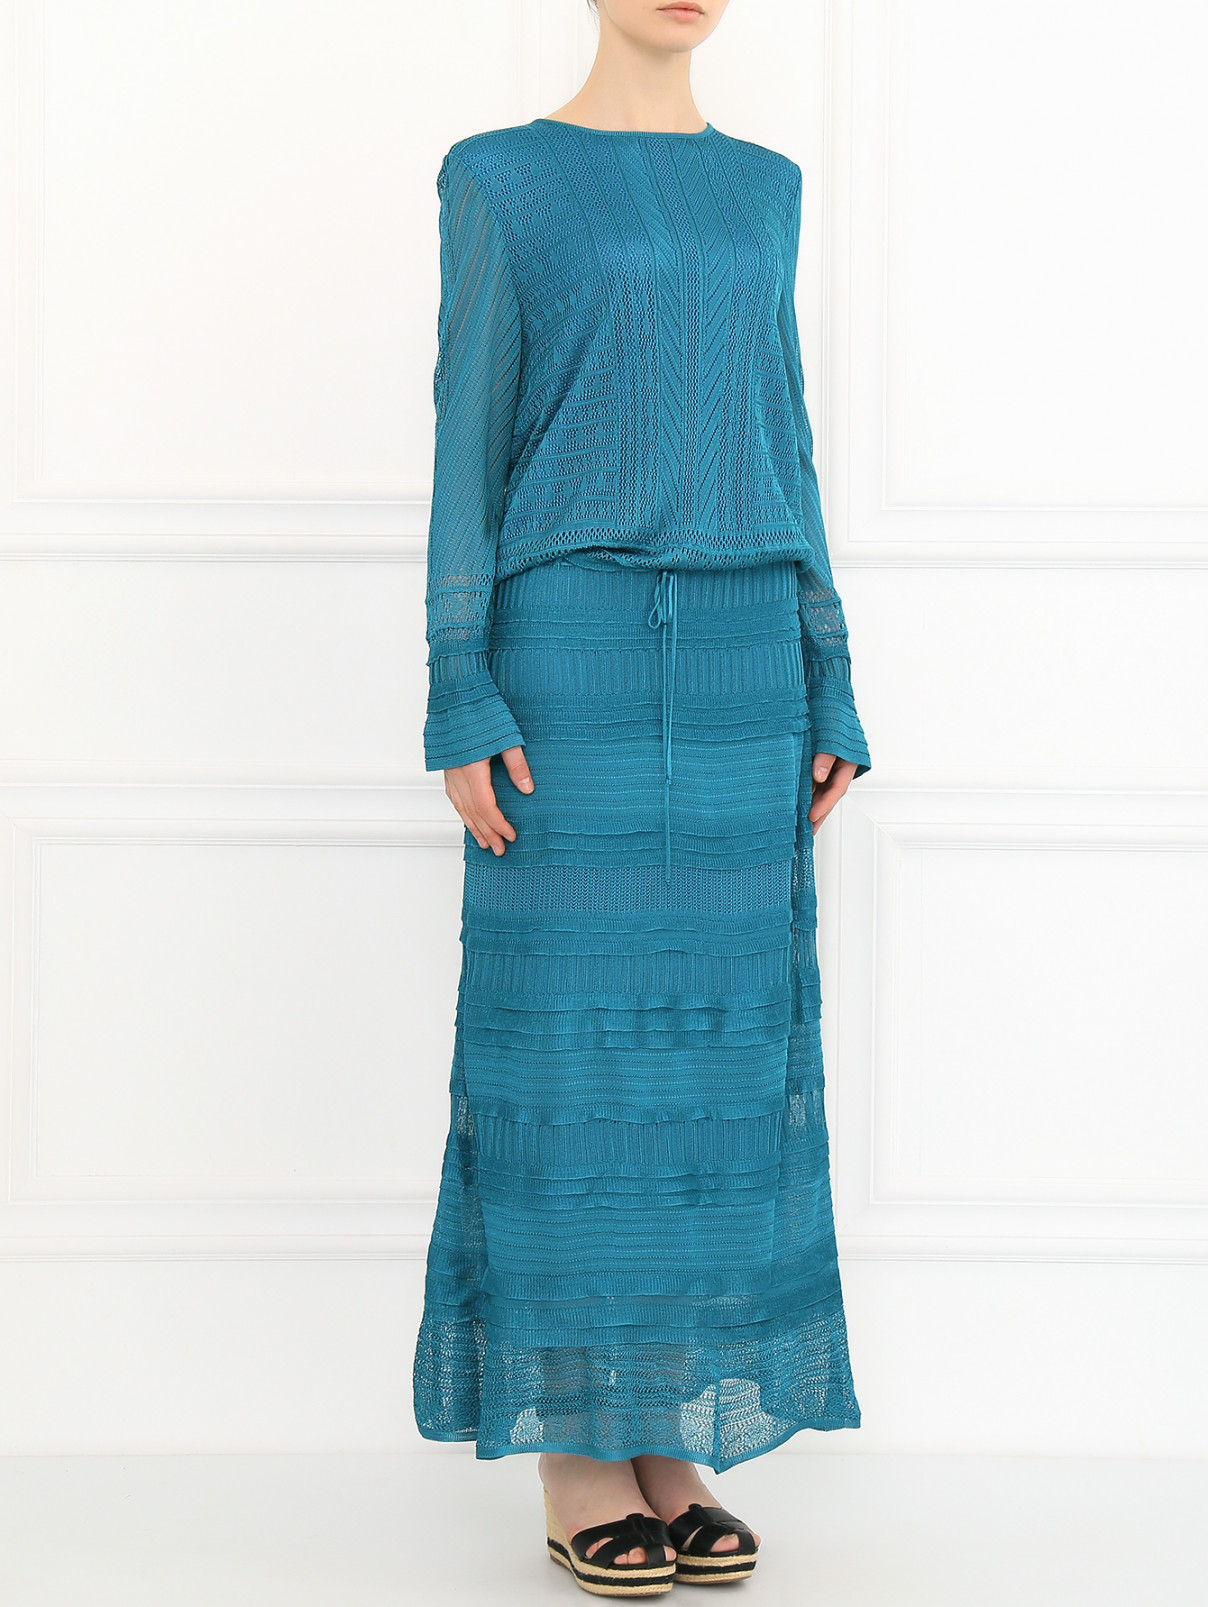 Платье-макси на кулиске Lil pour l'Autre  –  Модель Общий вид  – Цвет:  Синий